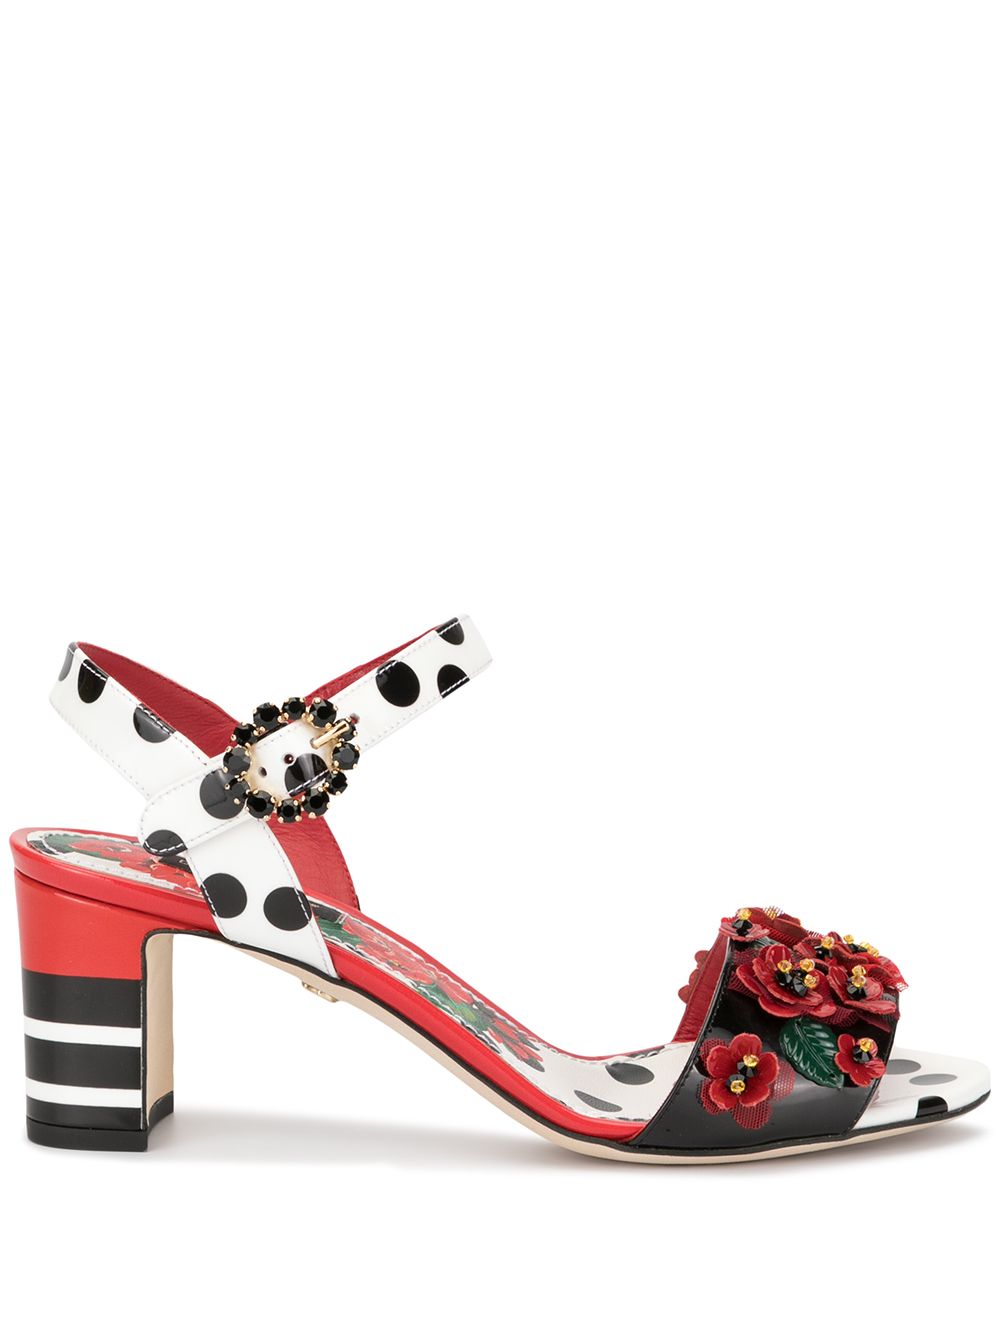 фото Dolce & Gabbana босоножки с цветочным декором